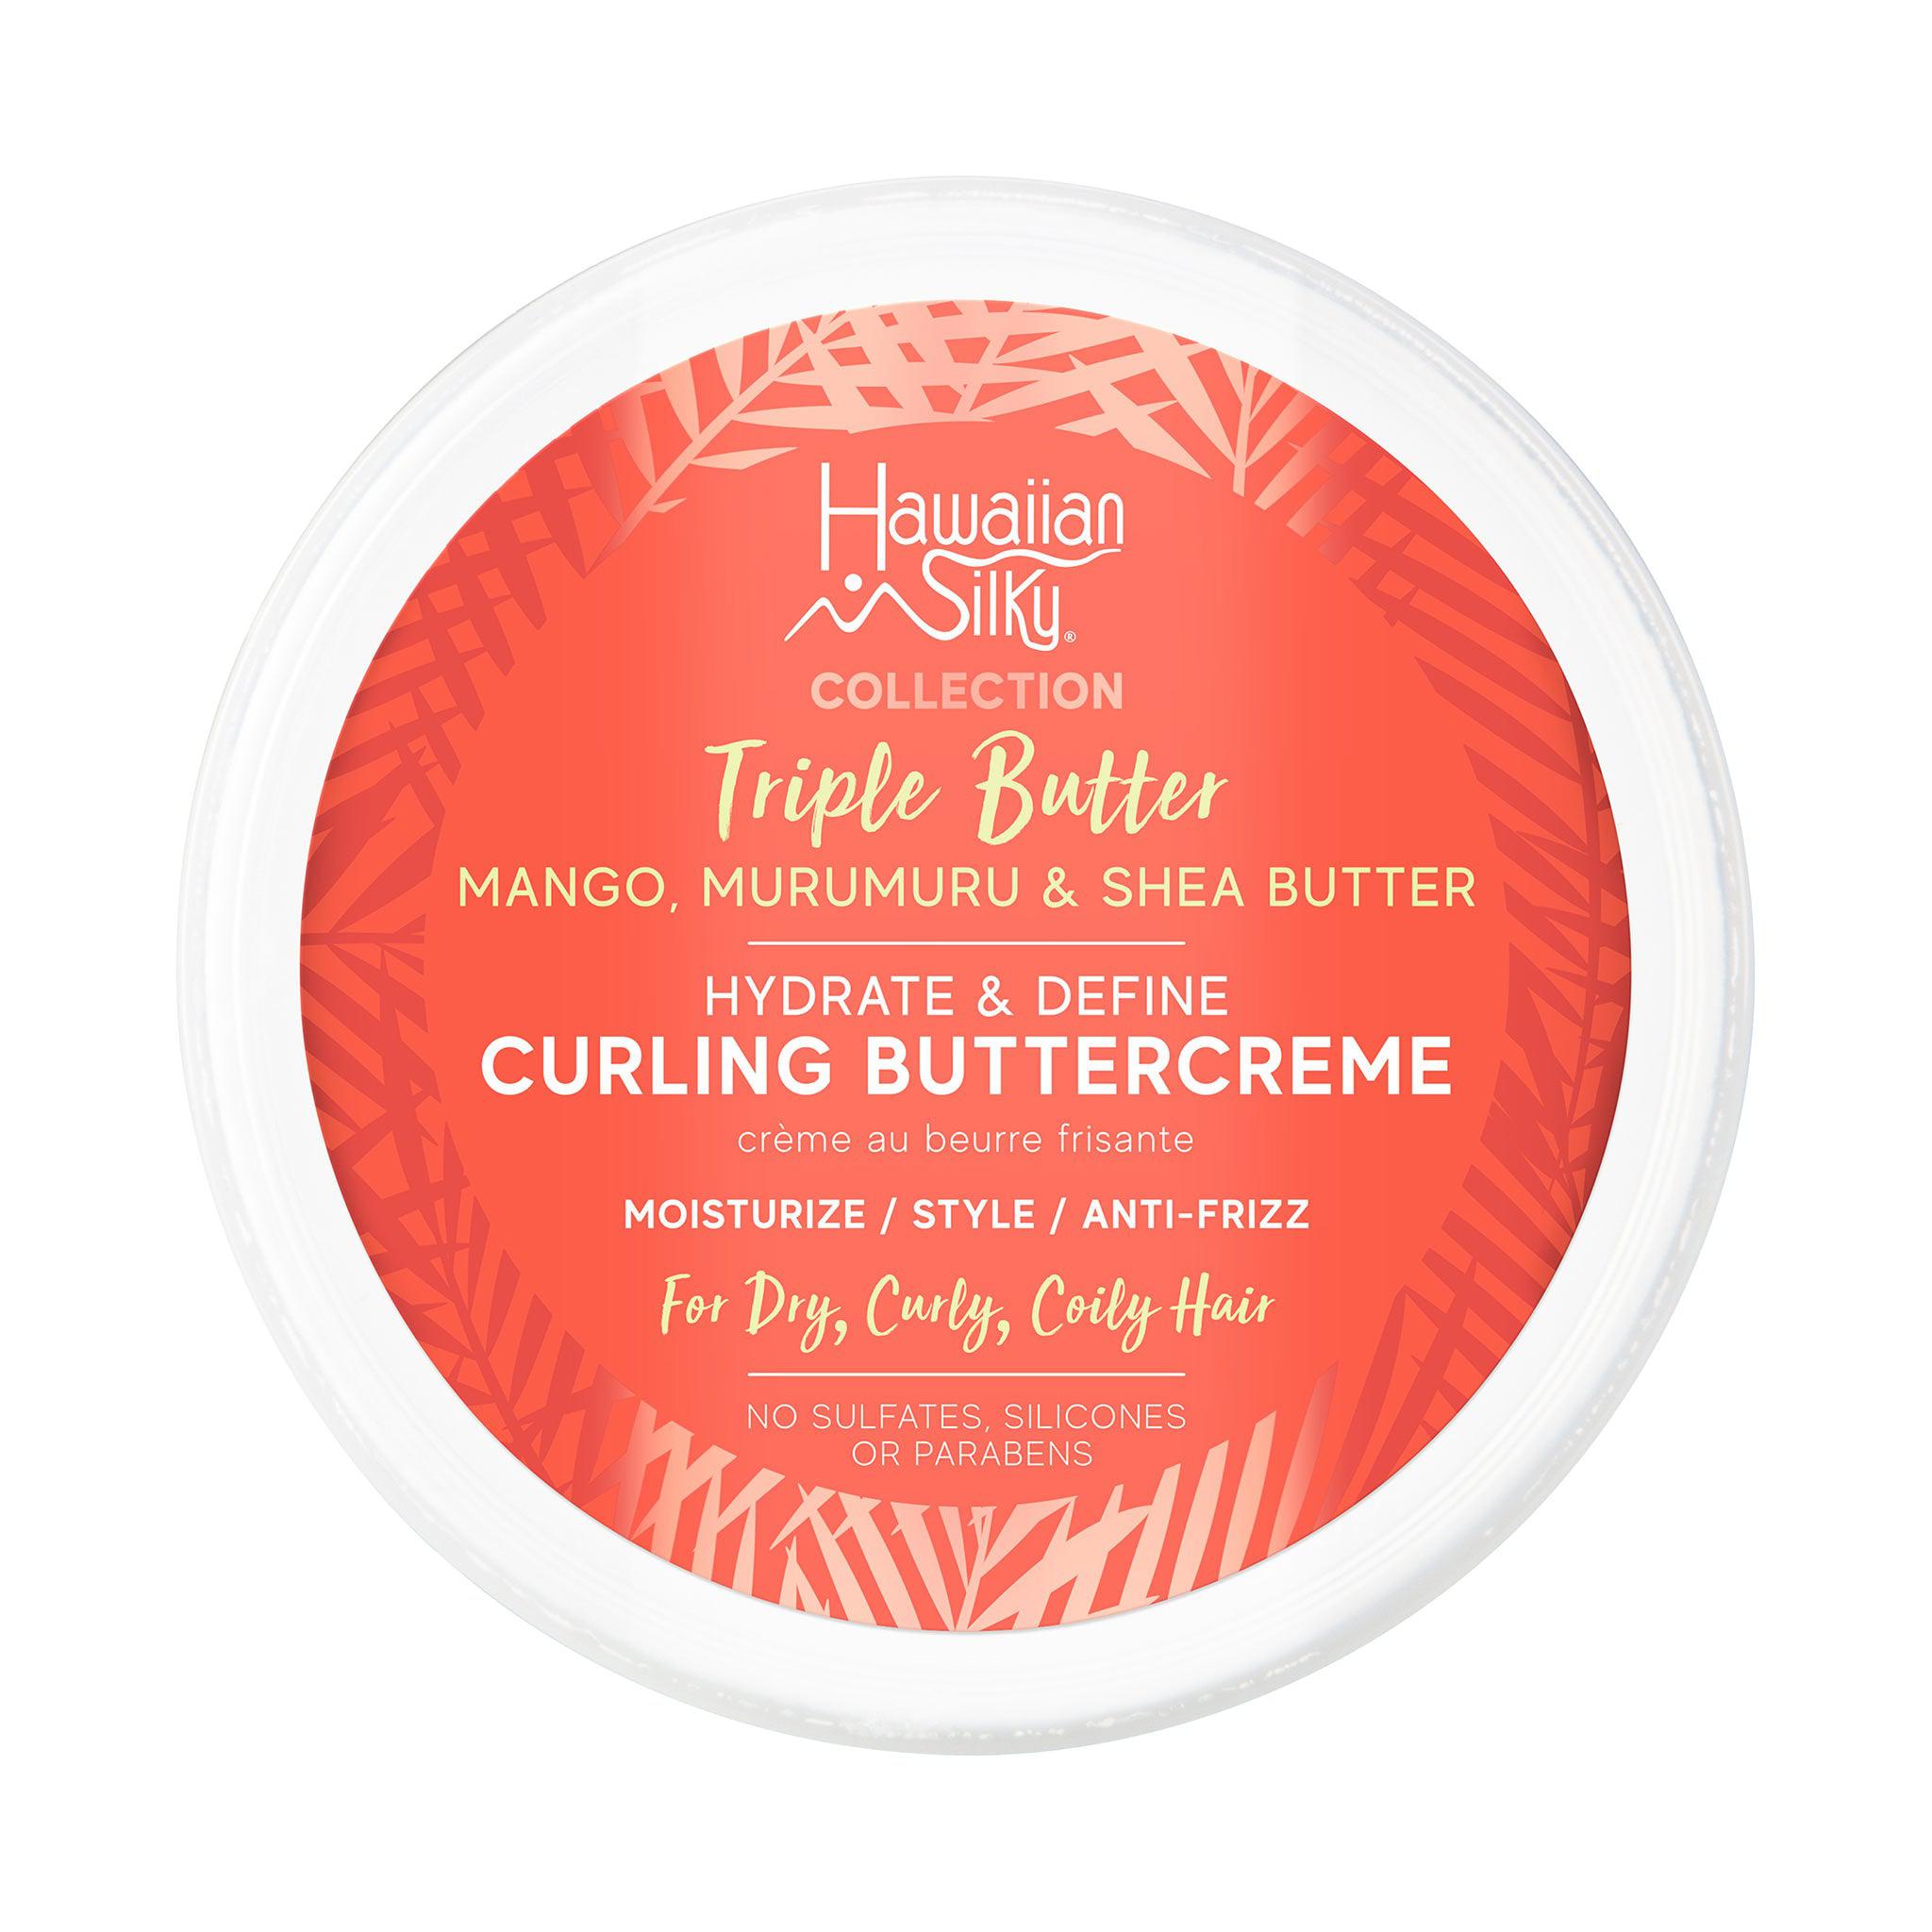 hawaiian sillky tripple butter curling buttercreme